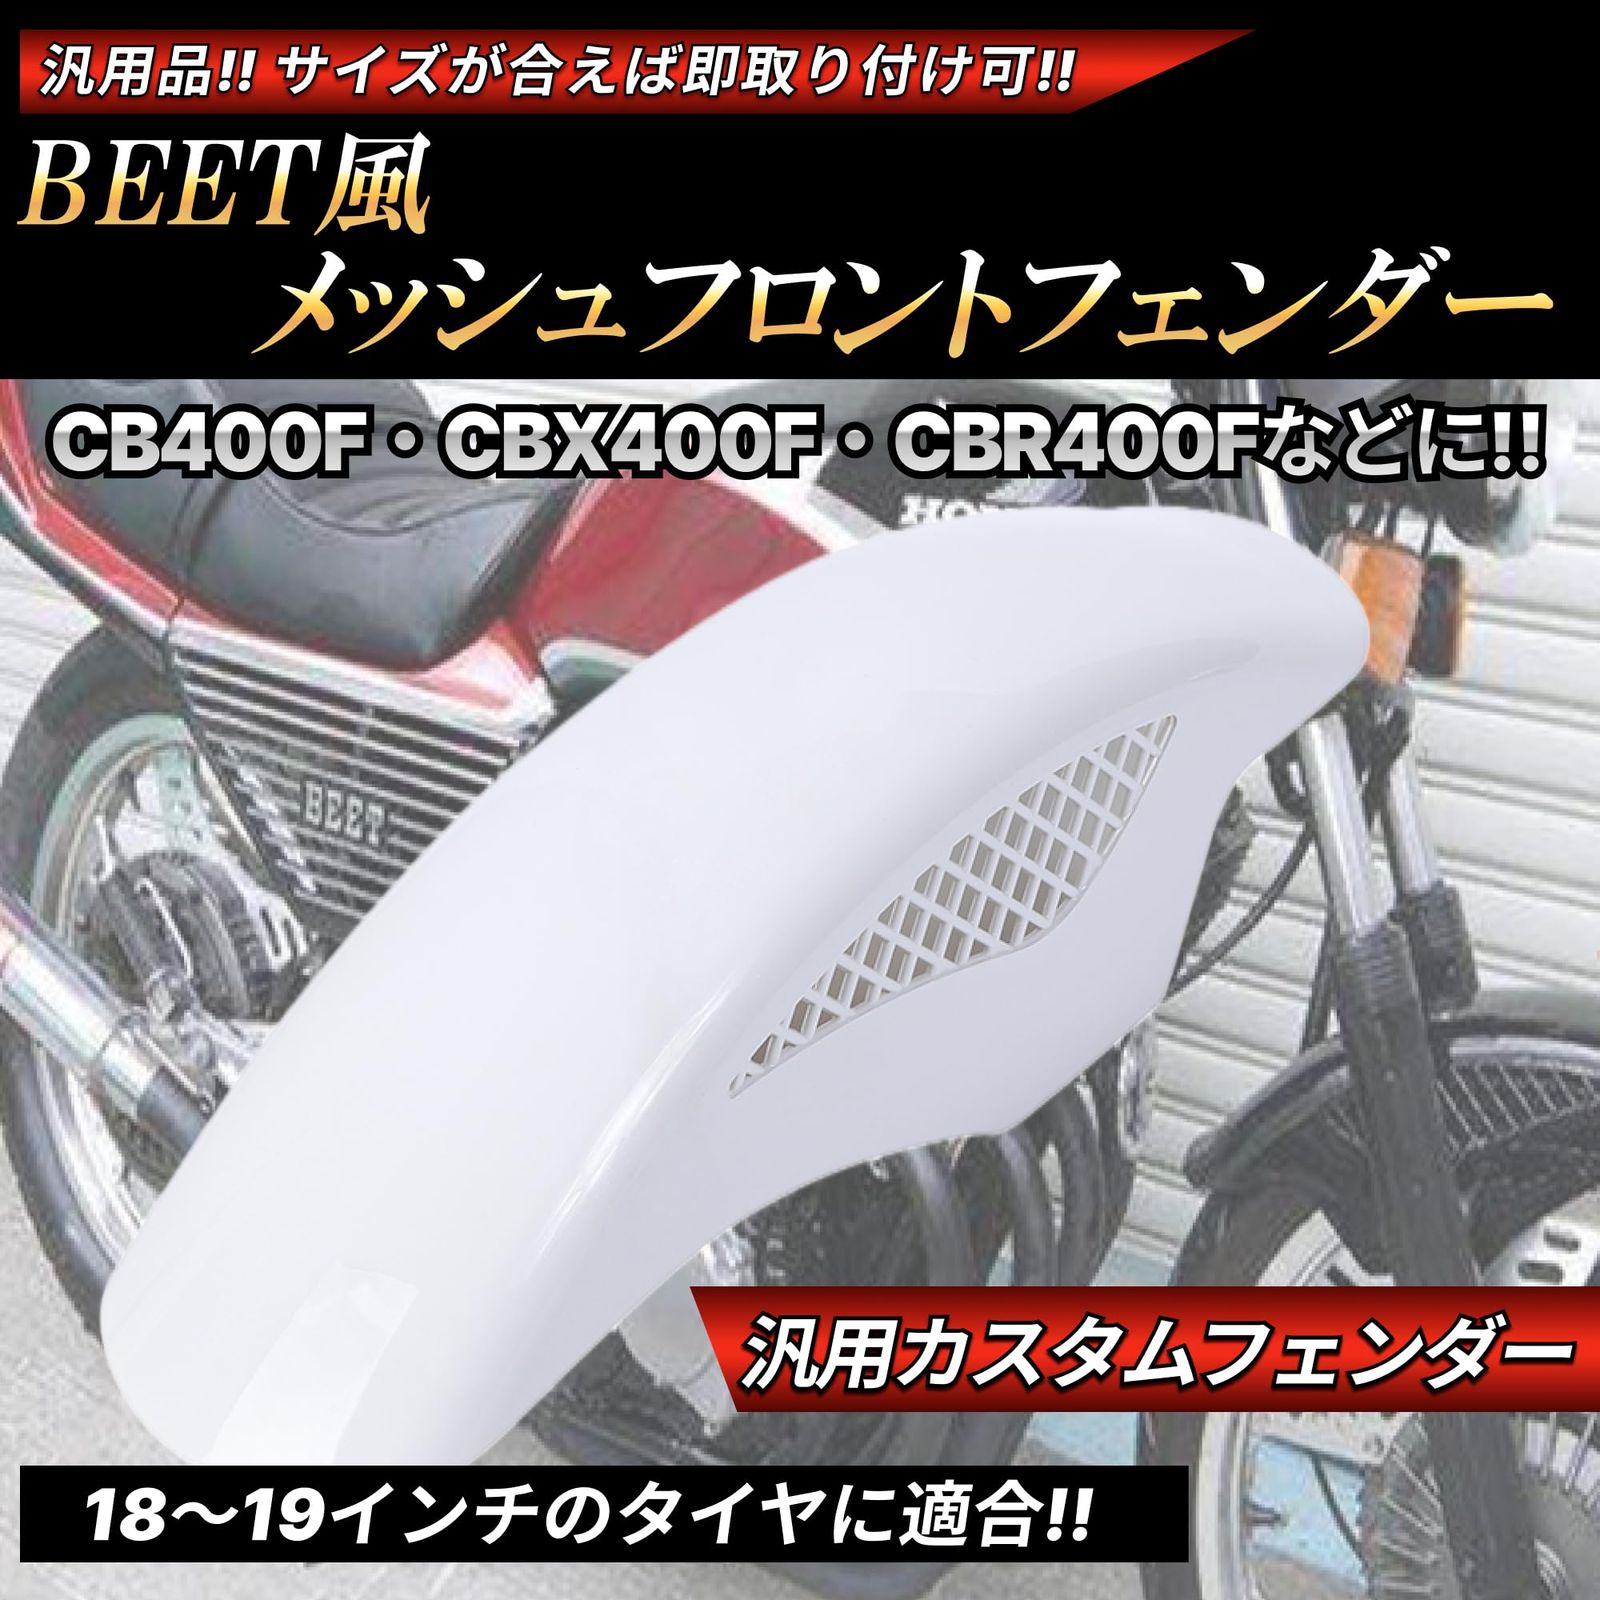 CBX400F BEETメッシュフェンダー - カウル、フェンダー、外装